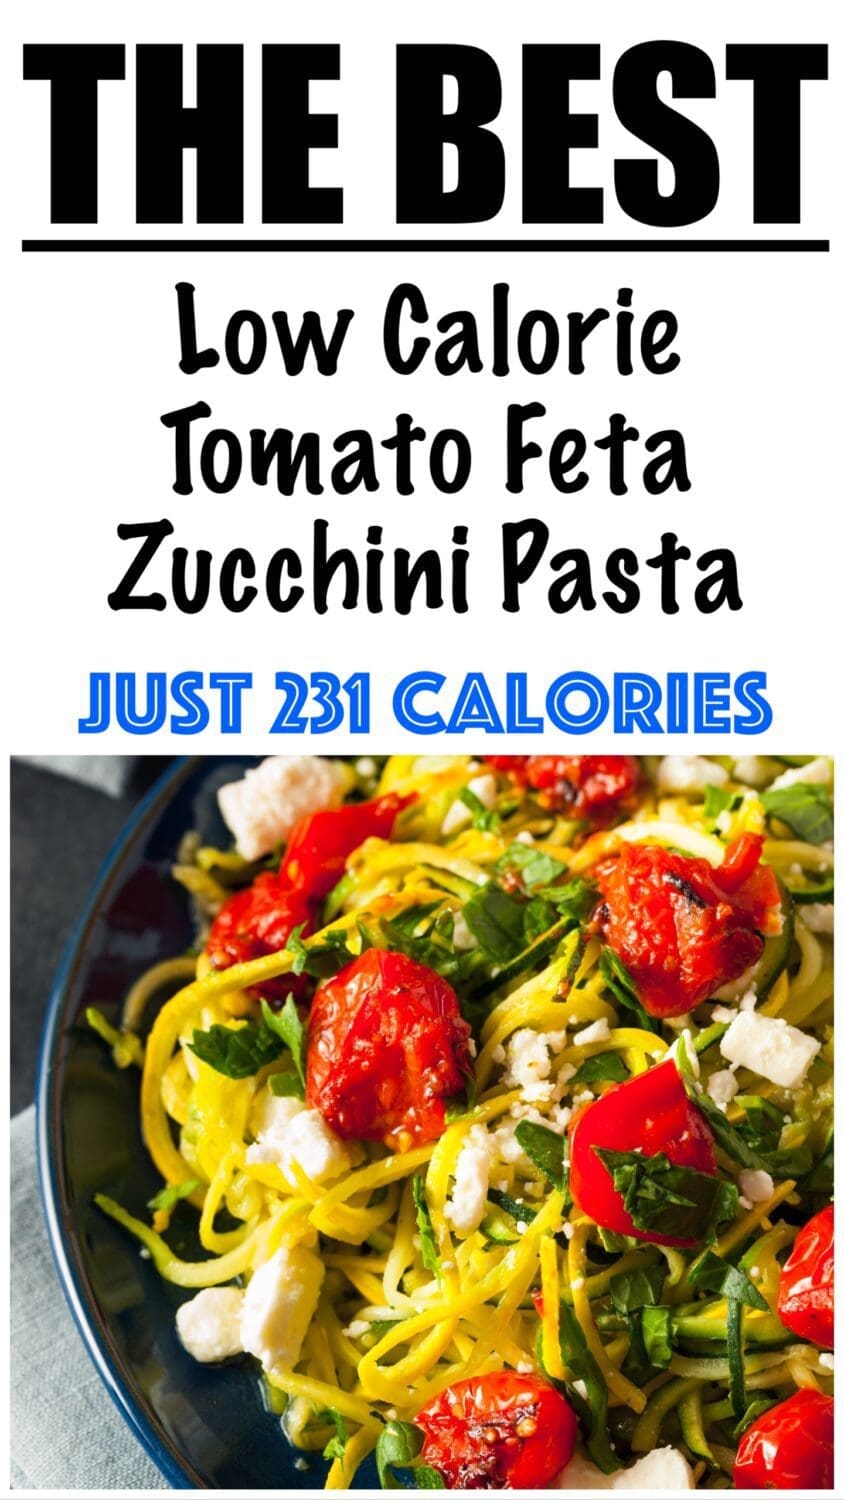 Low Calorie Tomato Feta Zucchini Pasta